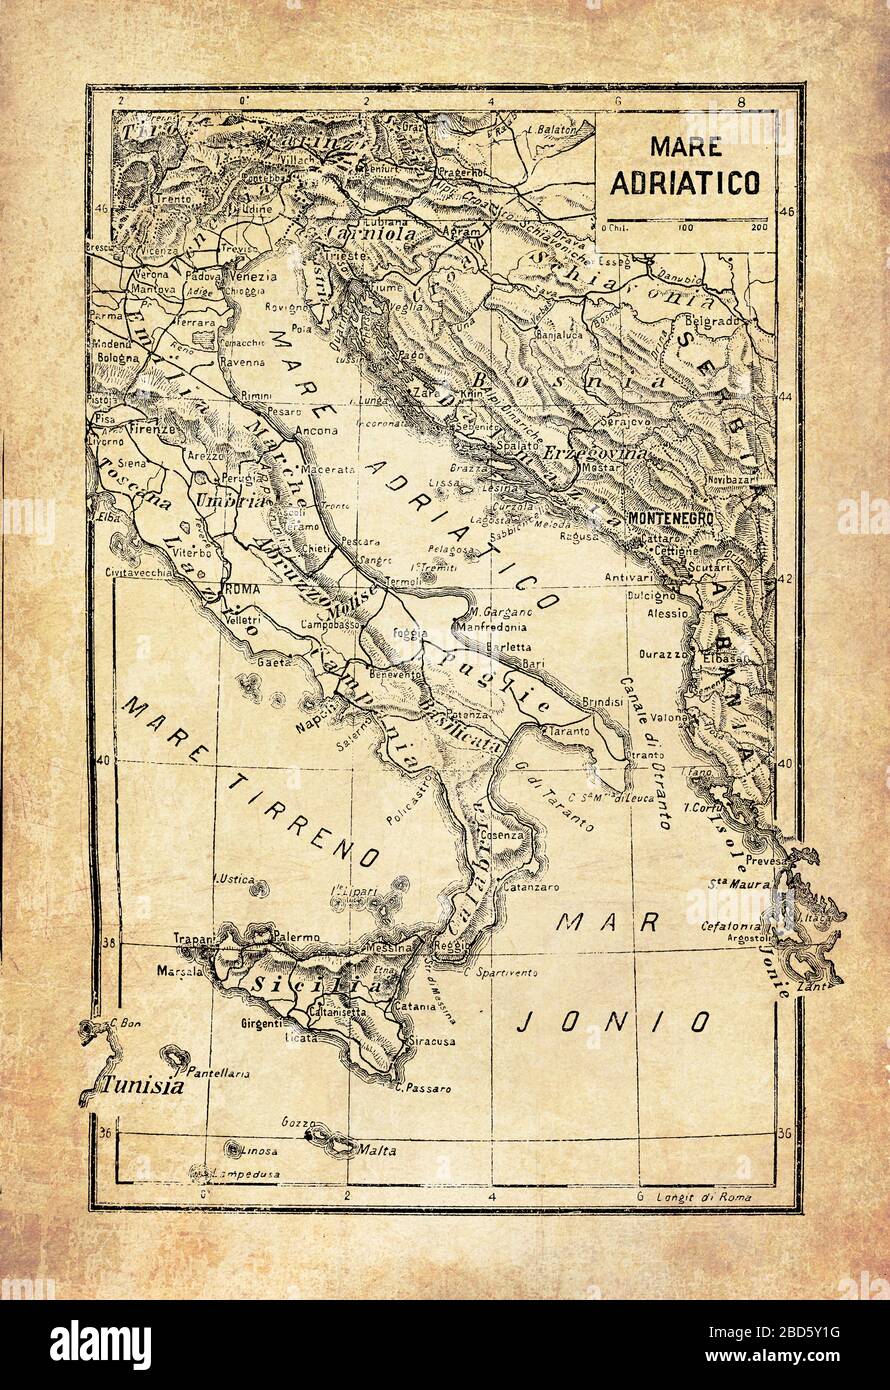 Antike Karte von adriatischem, jonischem und Tyrrhenischem Meer, als Teil des Mittelmeers in der Nähe der Küsten Italiens und Siziliens mit geographischen italienischen Namen und Beschreibungen Stockfoto